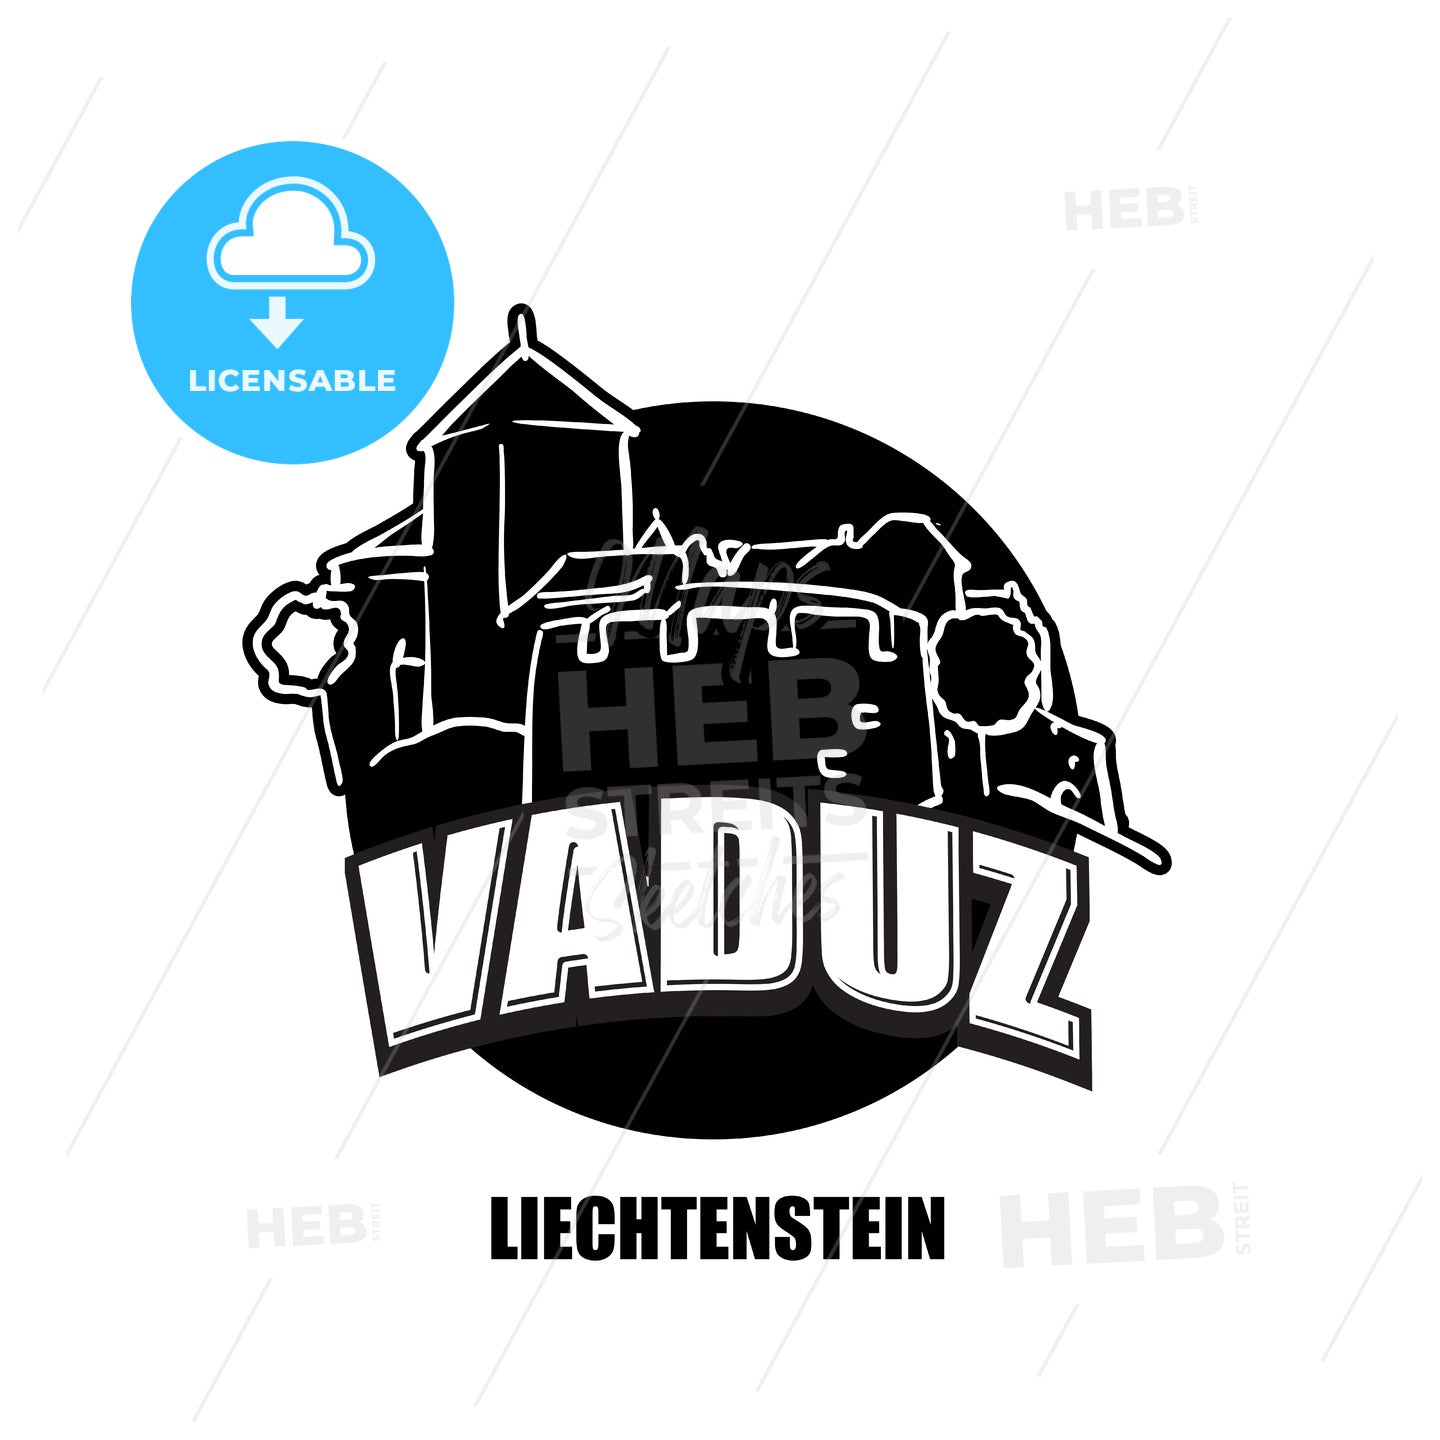 Vaduz, Liechtenstein, black and white logo – instant download